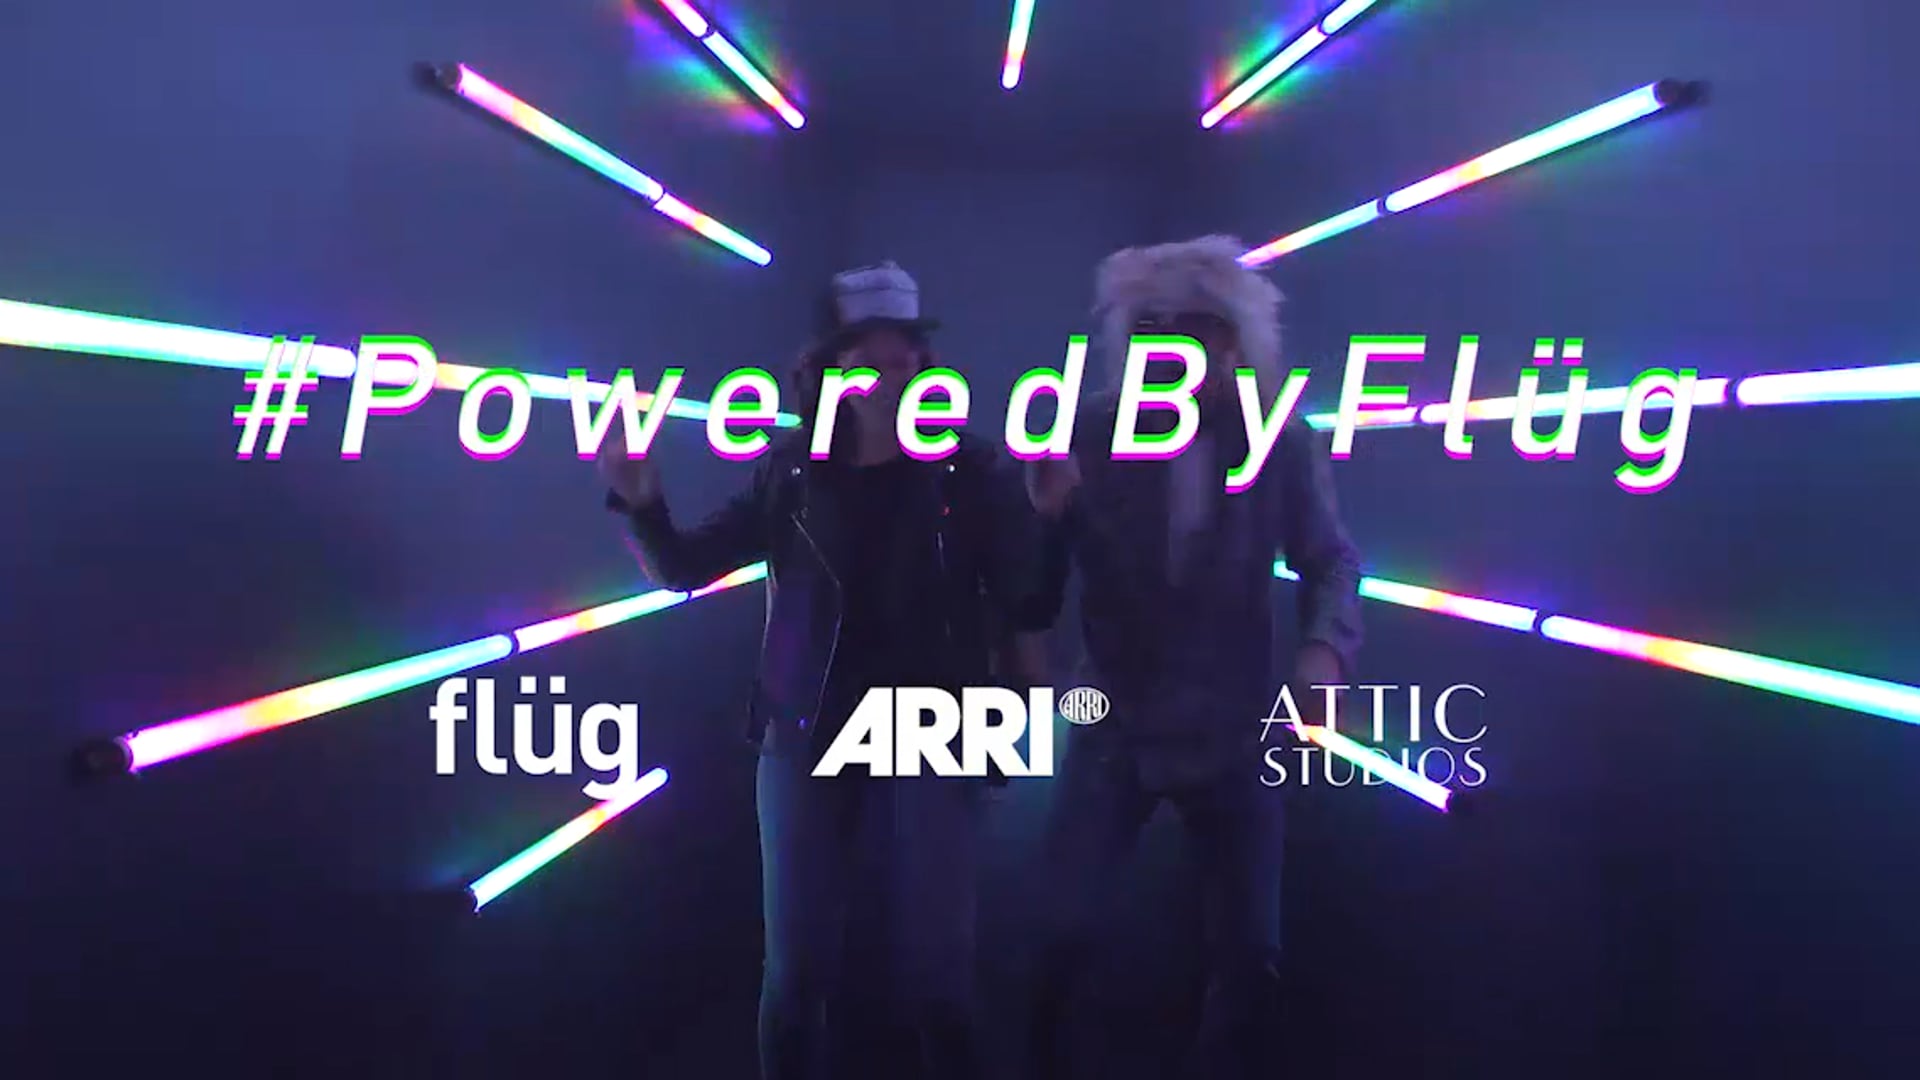 #poweredbyflug